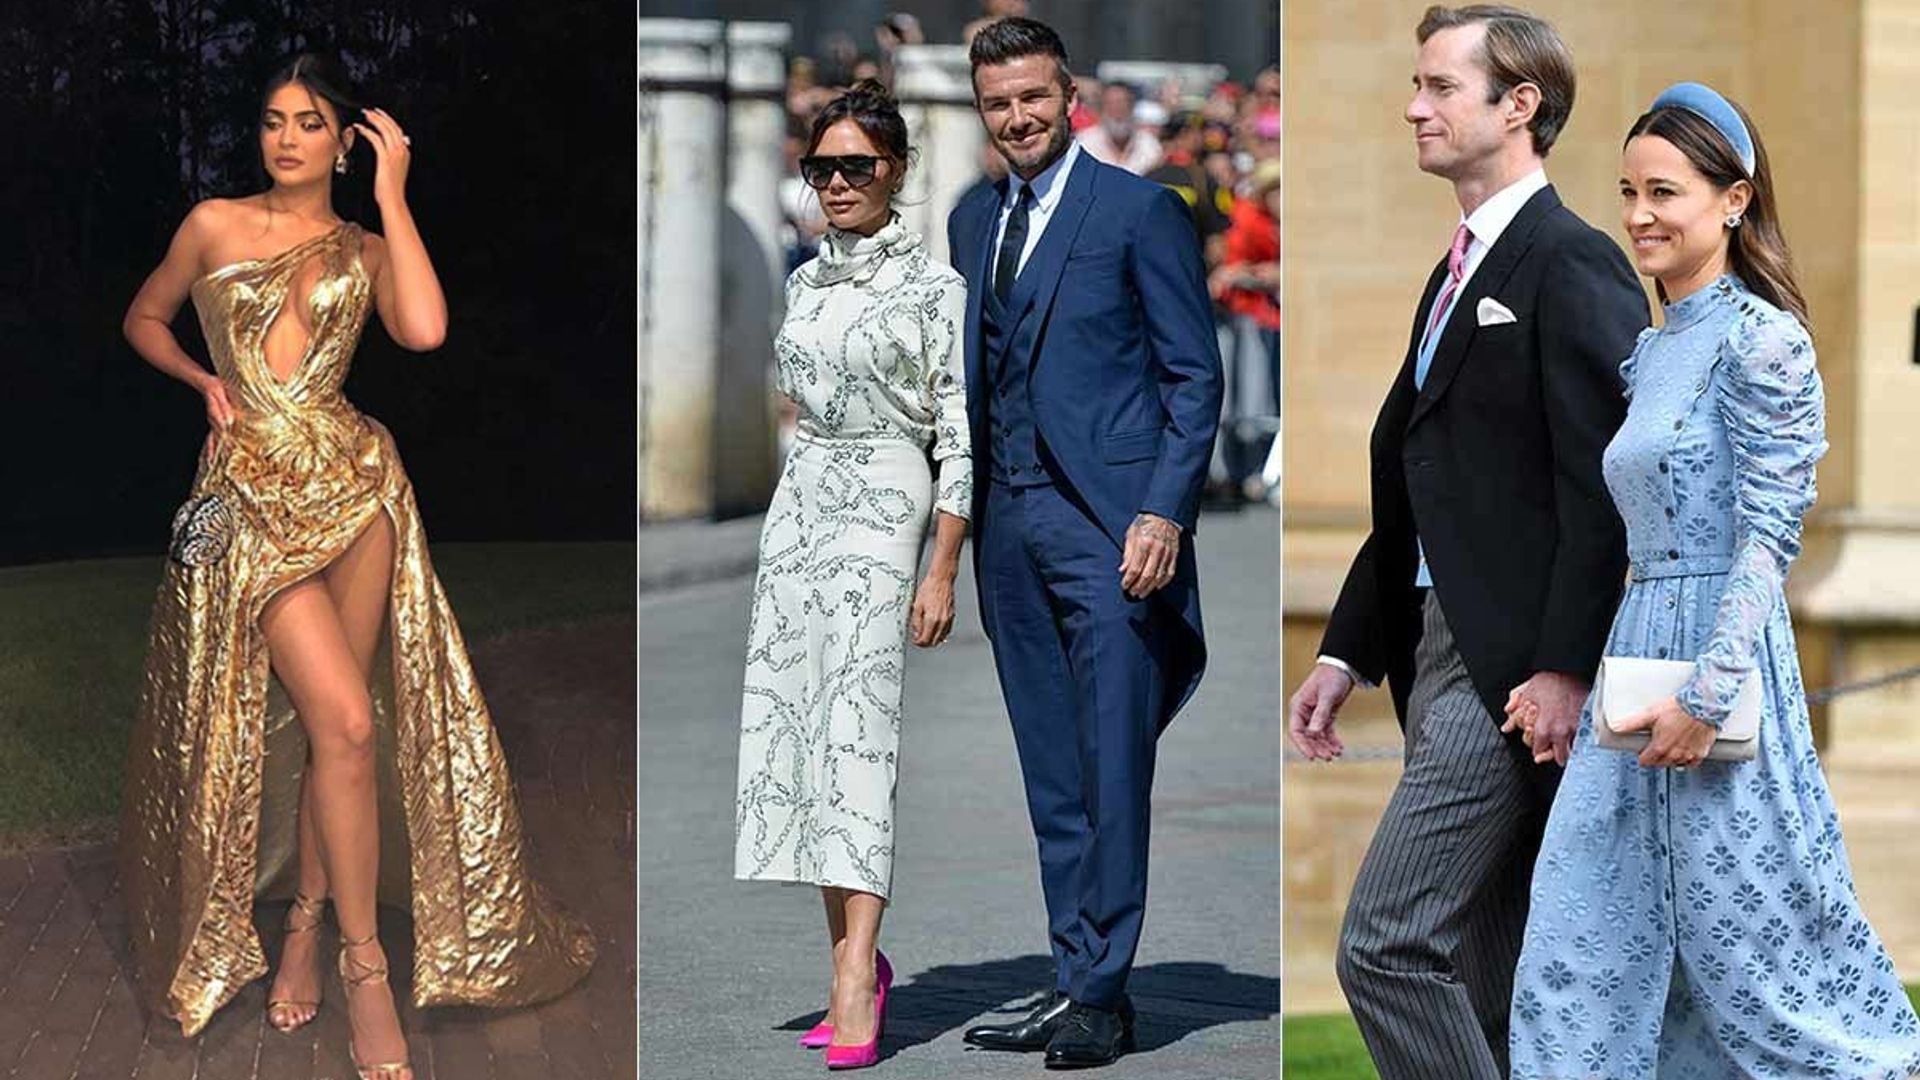 10 Best Celebrity Wedding Guest Dresses Dresses Images 2022